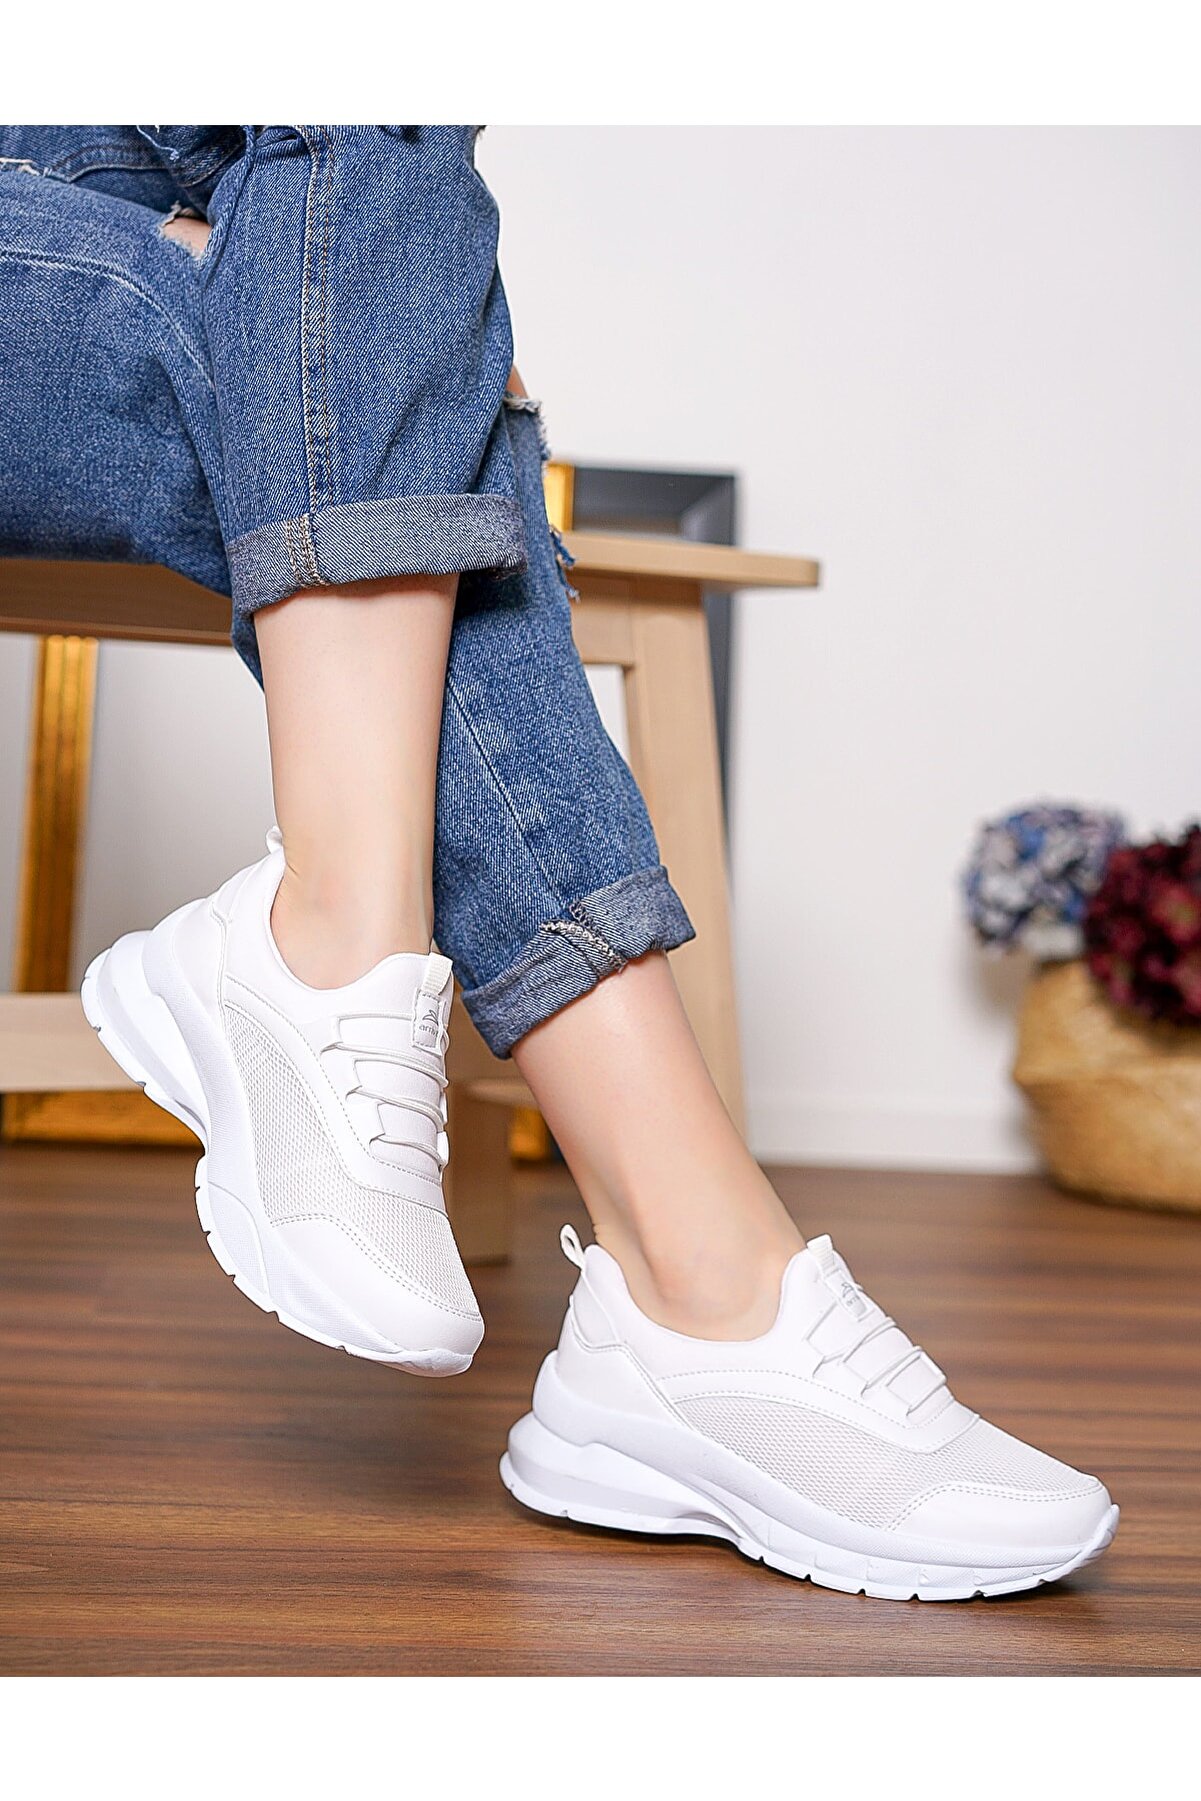 LETAO Ortapedik Kadın Beyaz Günlük Spor Sneaker Yürüyüş Ayakkabı